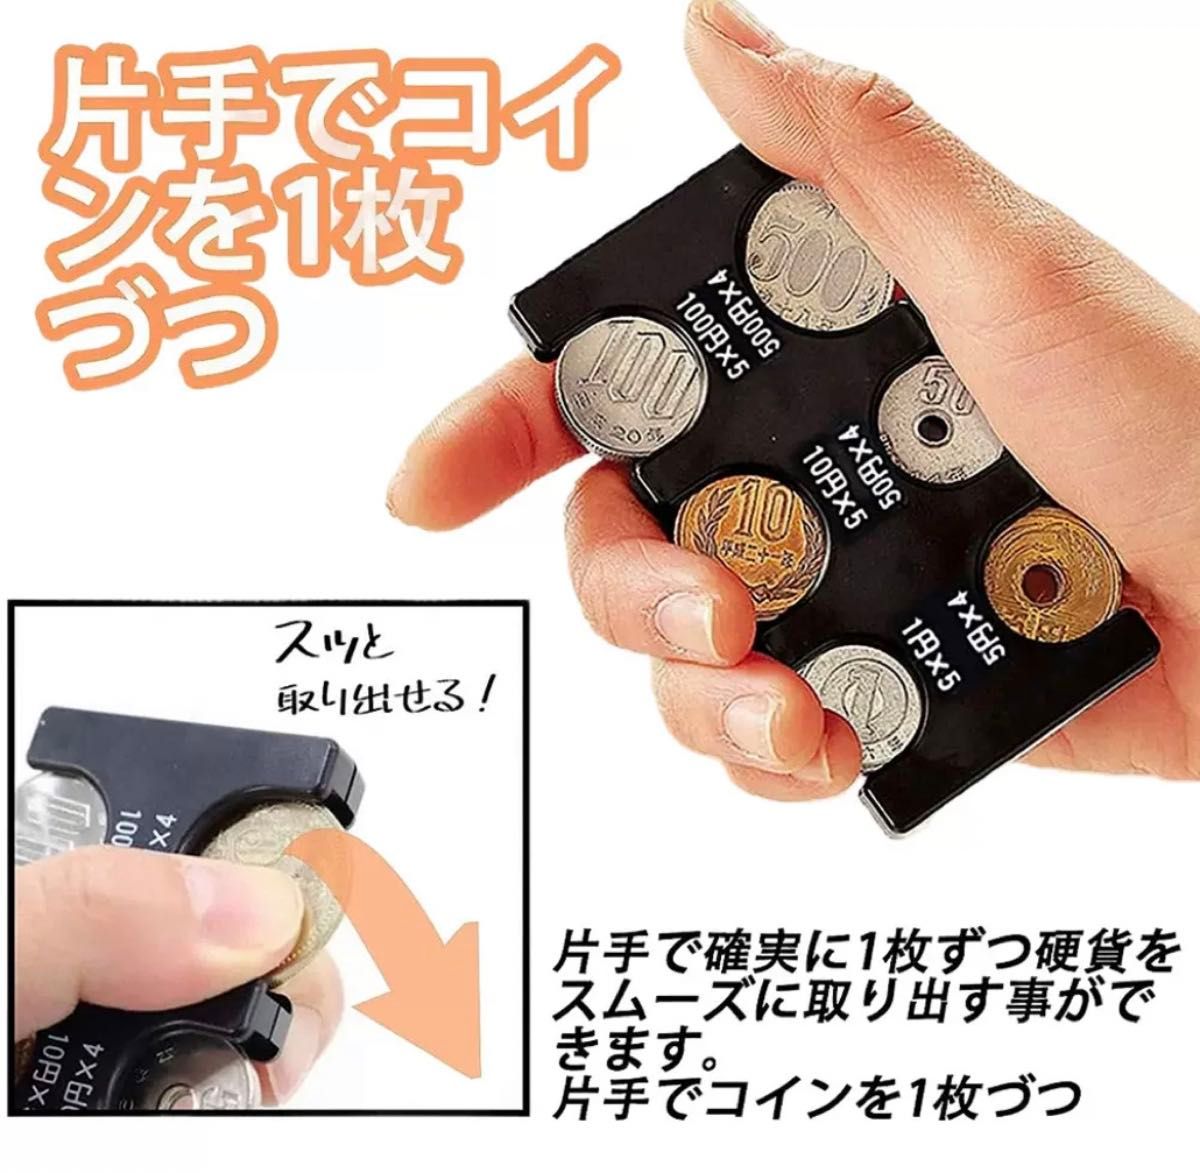 コインホルダー 小銭 財布 コイン収納 軽量 コインケース コンパクト 黒 コインケース コインホルダー コイン収納 財布 